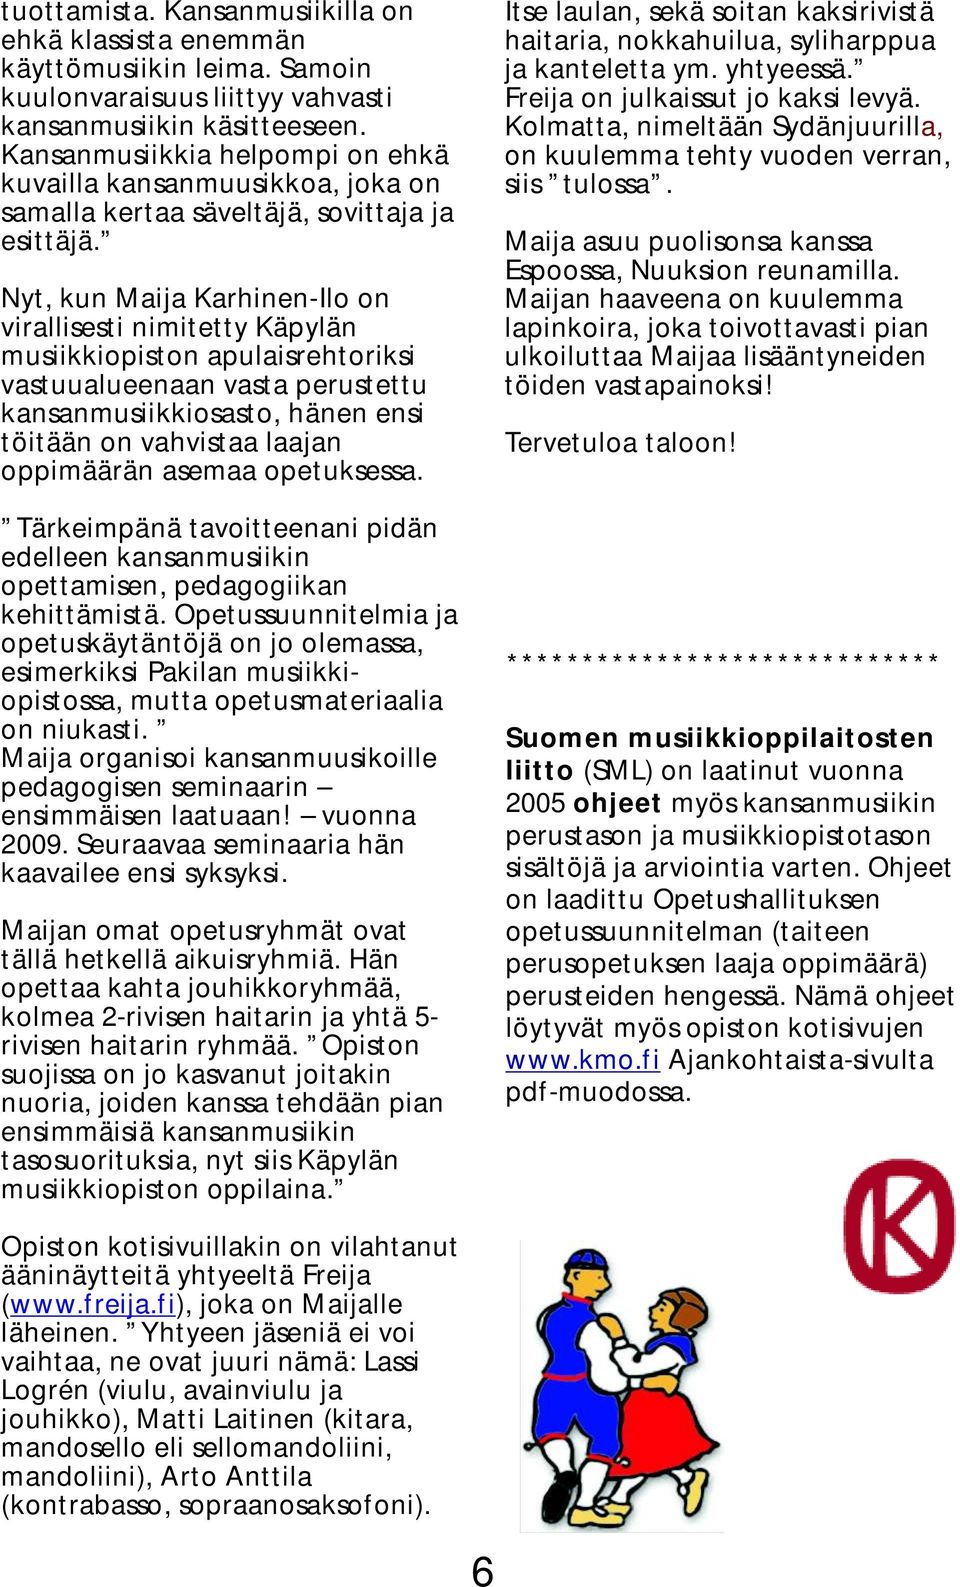 Nyt, kun Maija Karhinen-Ilo on virallisesti nimitetty Käpylän musiikkiopiston apulaisrehtoriksi vastuualueenaan vasta perustettu kansanmusiikkiosasto, hänen ensi töitään on vahvistaa laajan